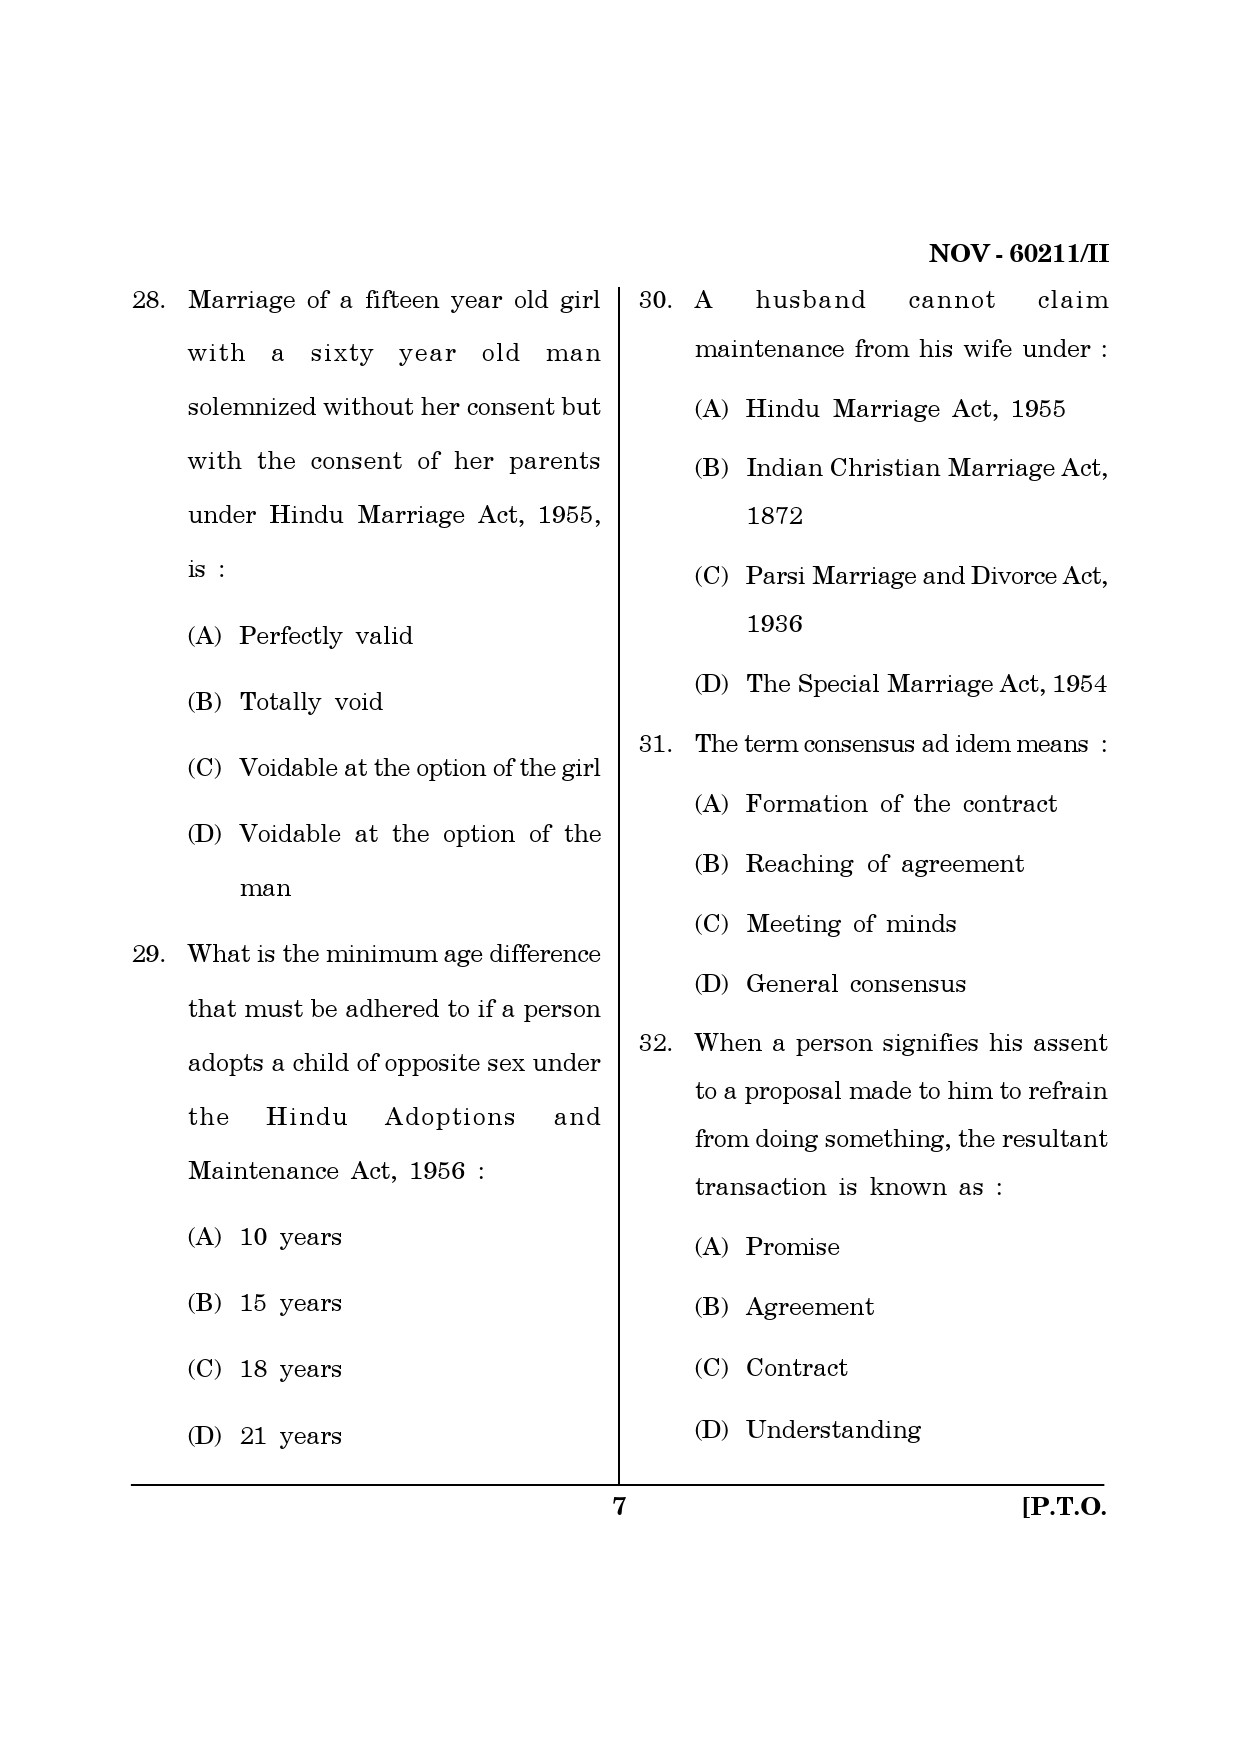 Maharashtra SET Law Question Paper II November 2011 7